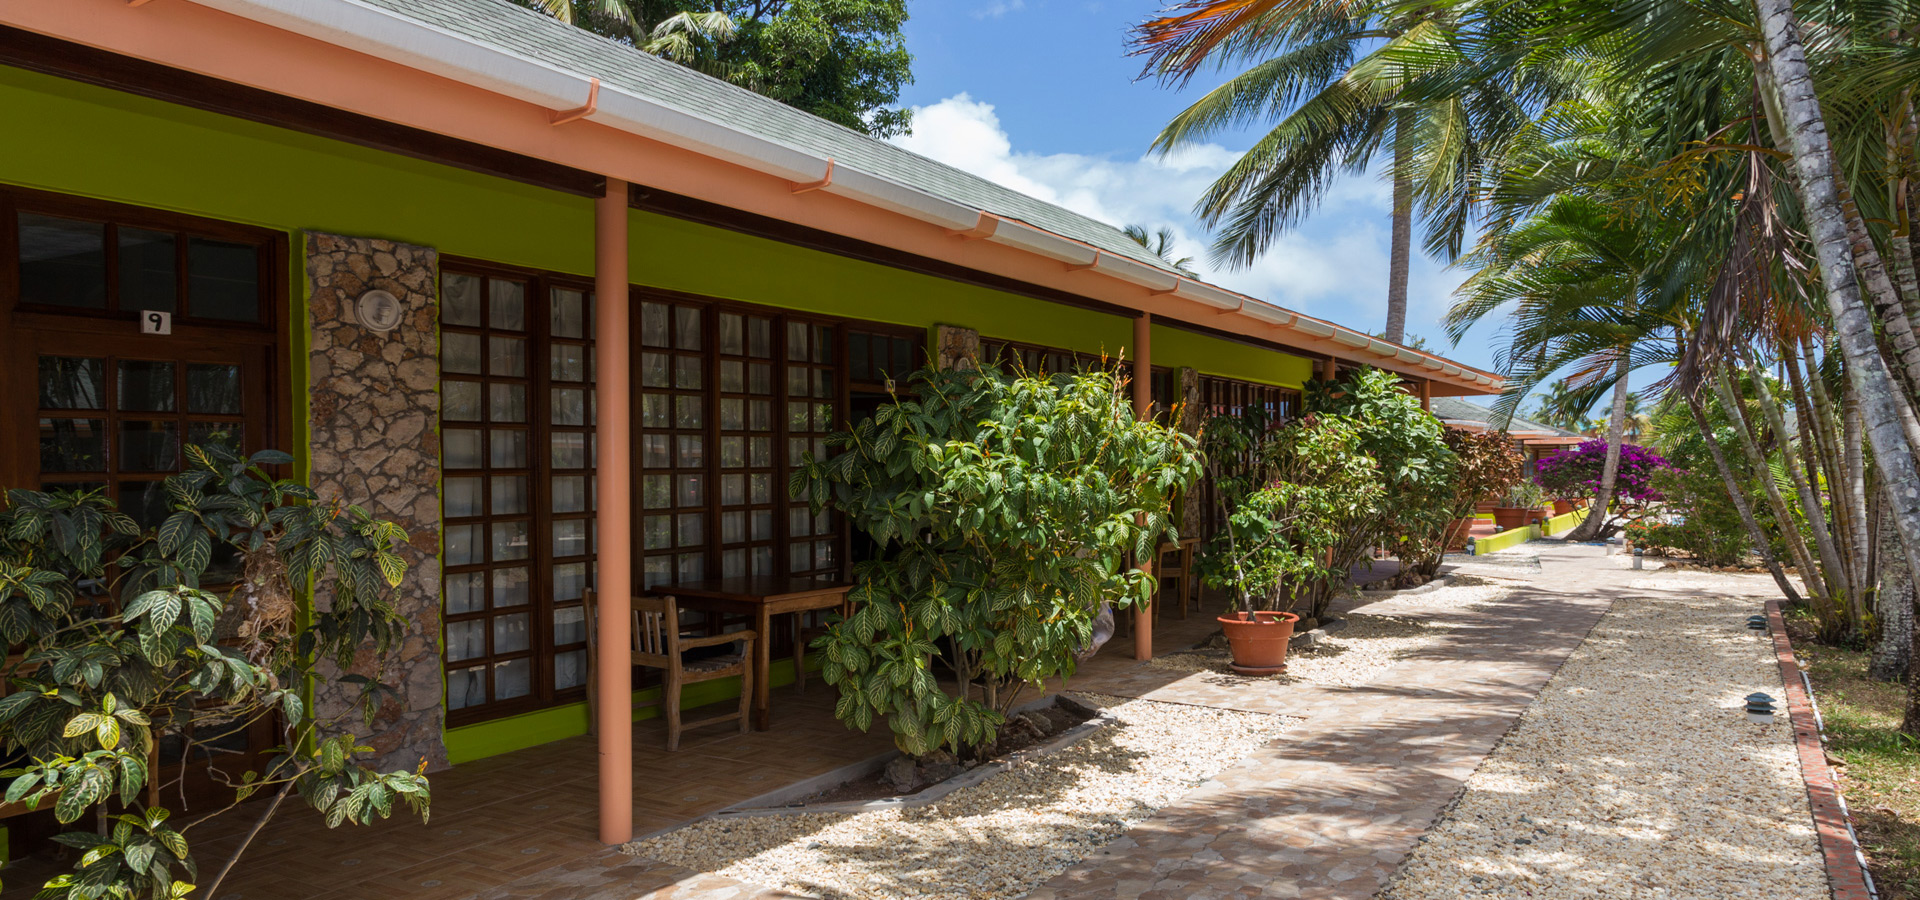 Tobago holiday accommodation at Shepherd's Inn & Restaurant